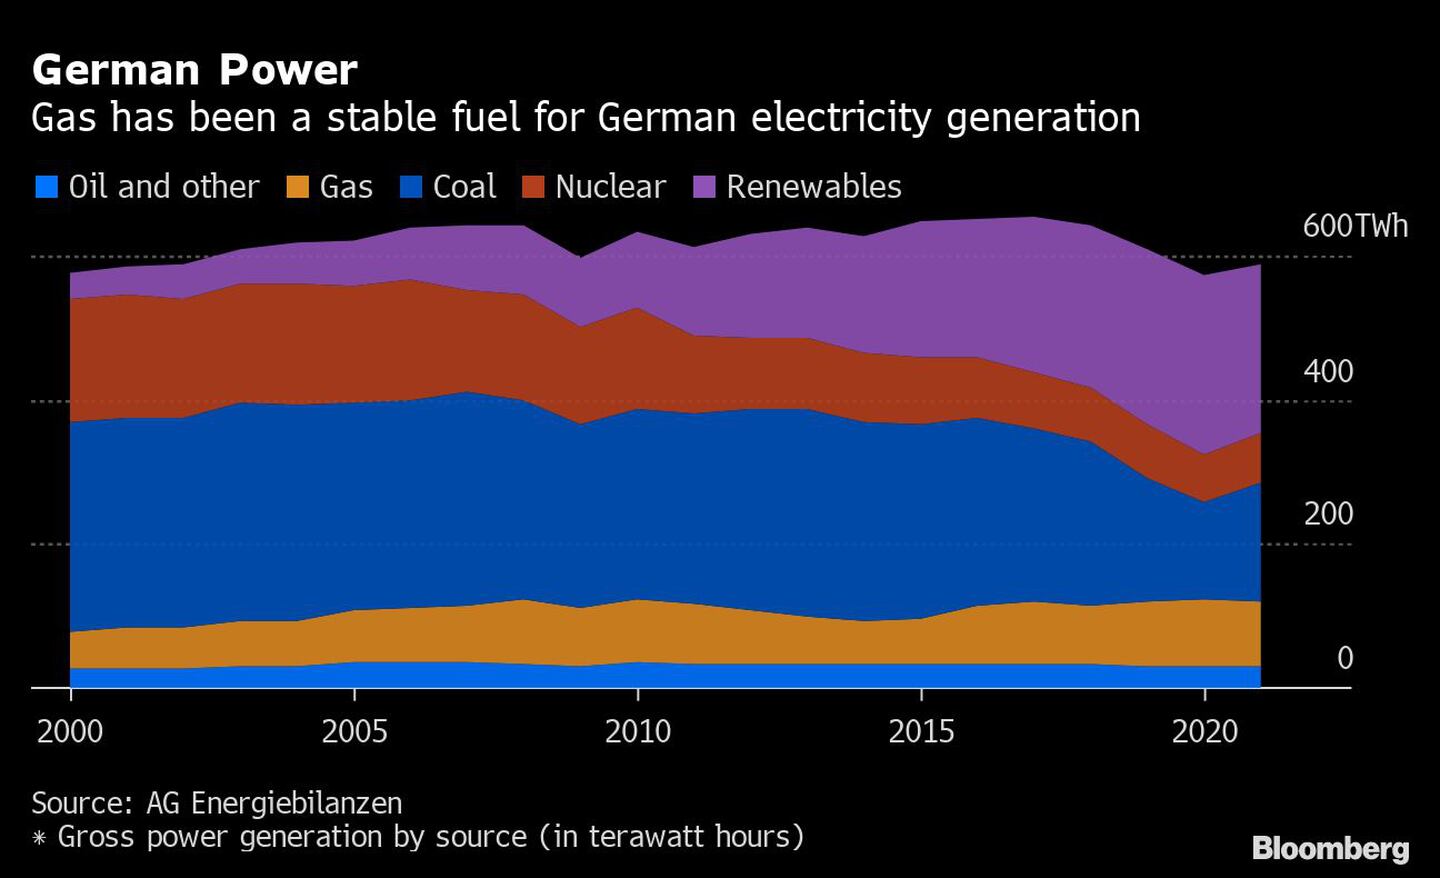 El gas ha sido un combustible estable para la generación eléctrica alemanadfd